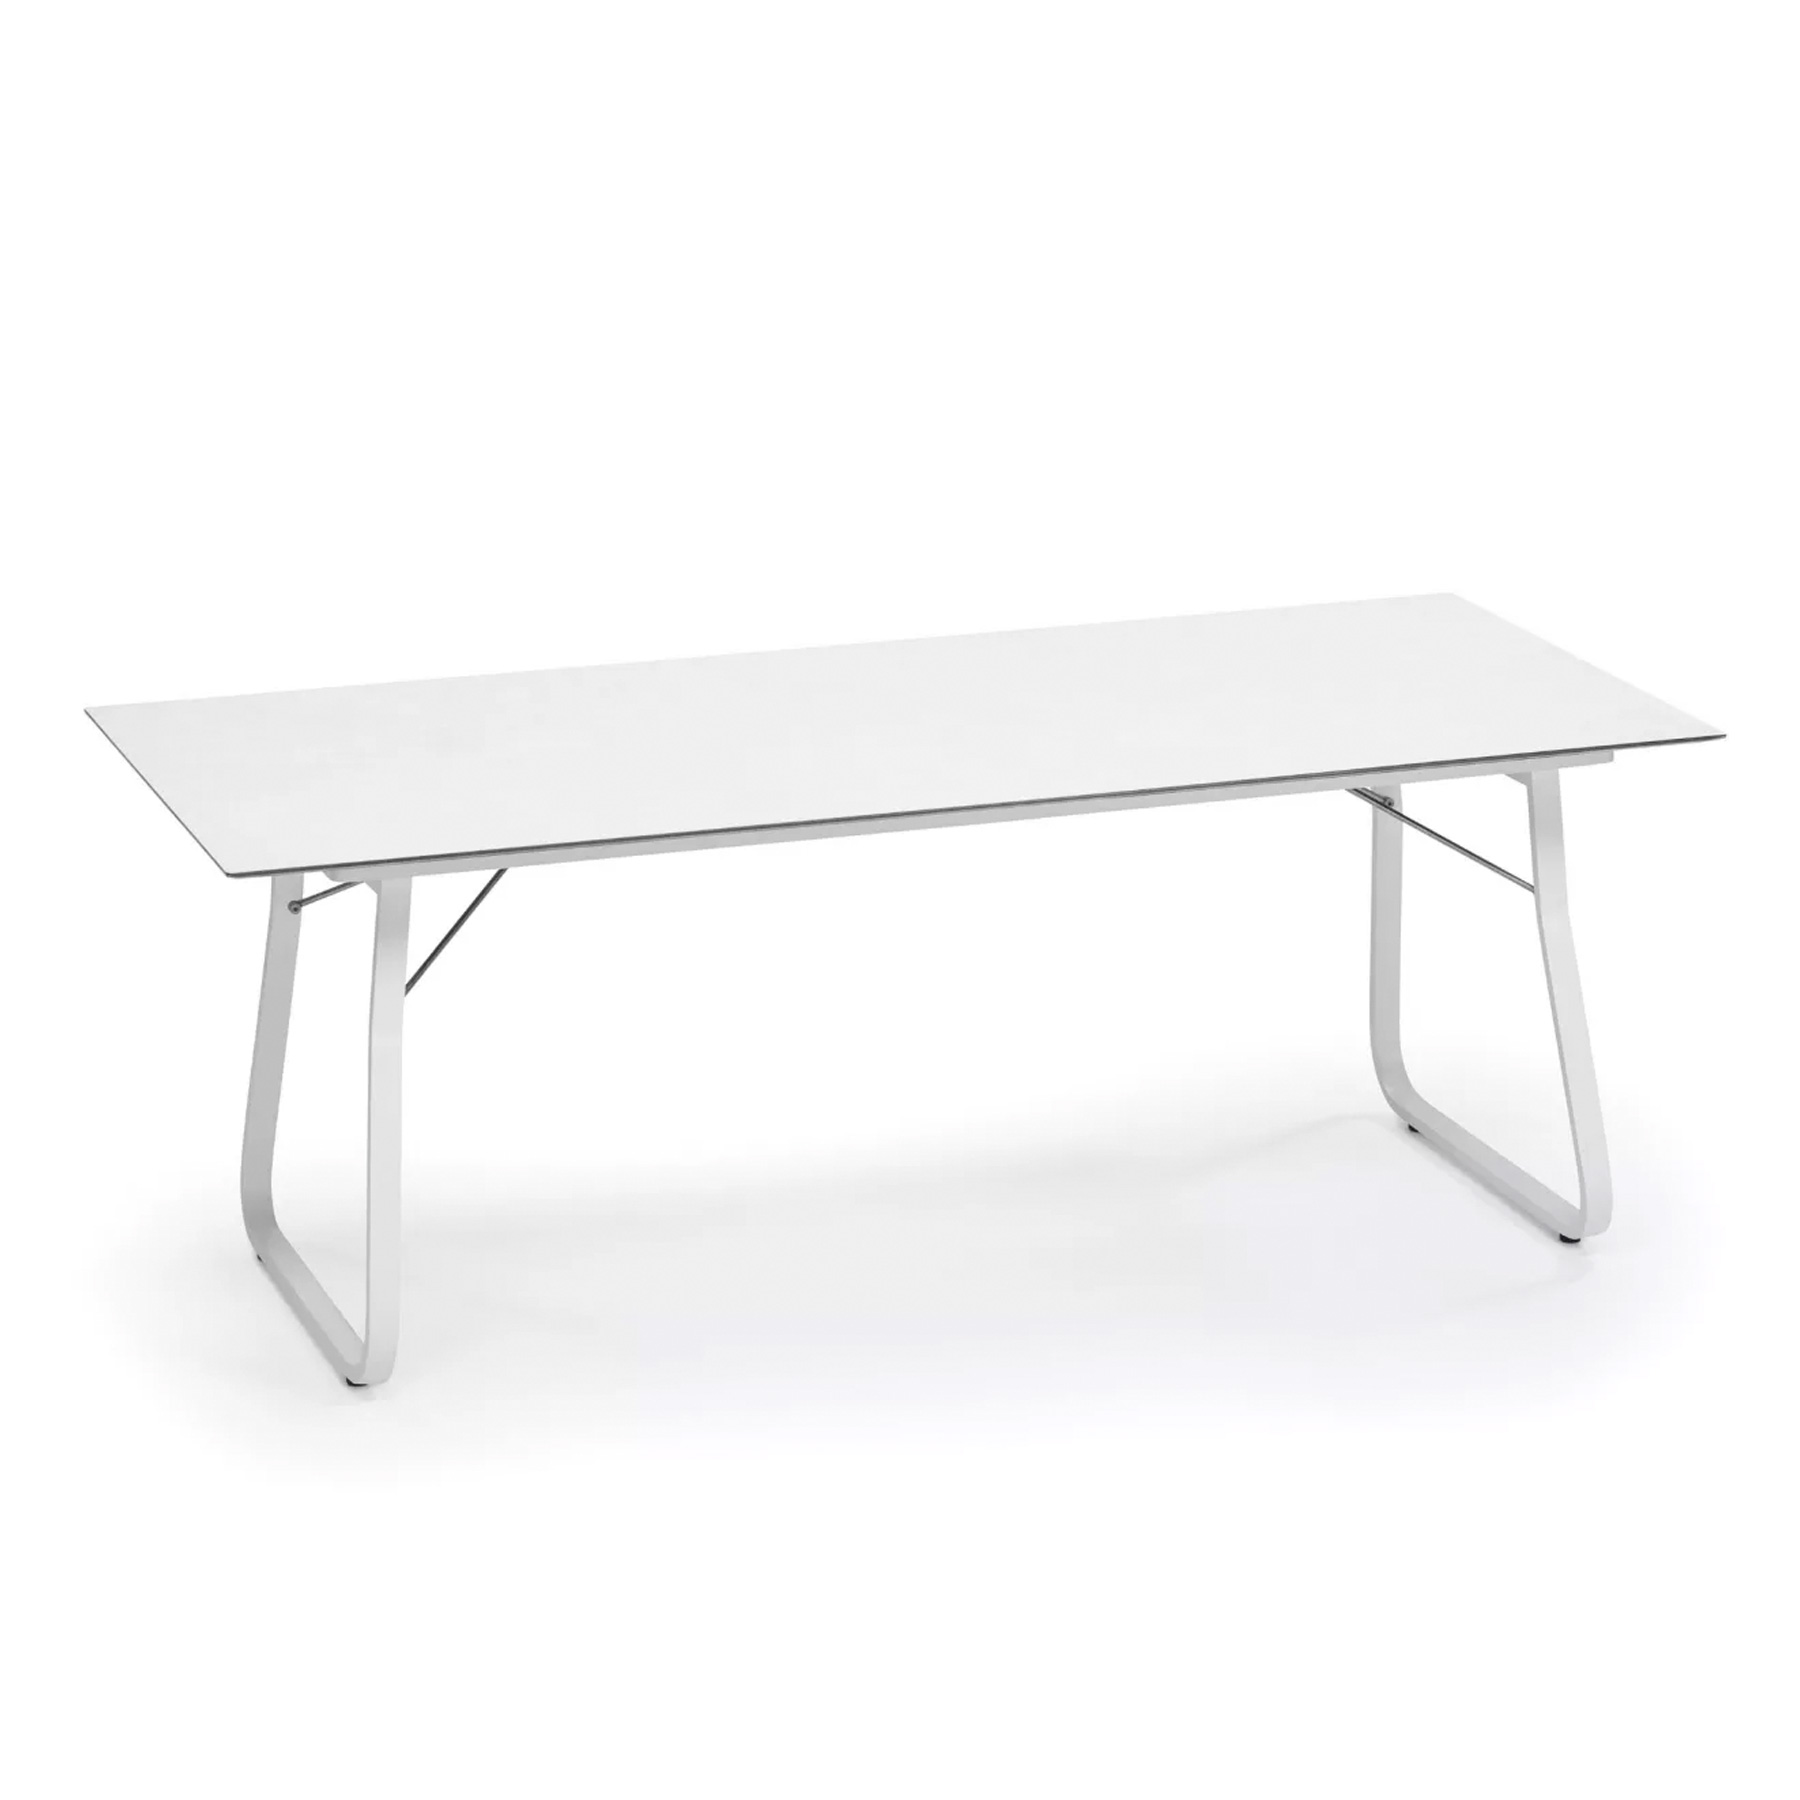 Ahoi Tisch Groß in Weiß mit 200x90cm Platte, Tischplatte Aus Hpl in Weiß